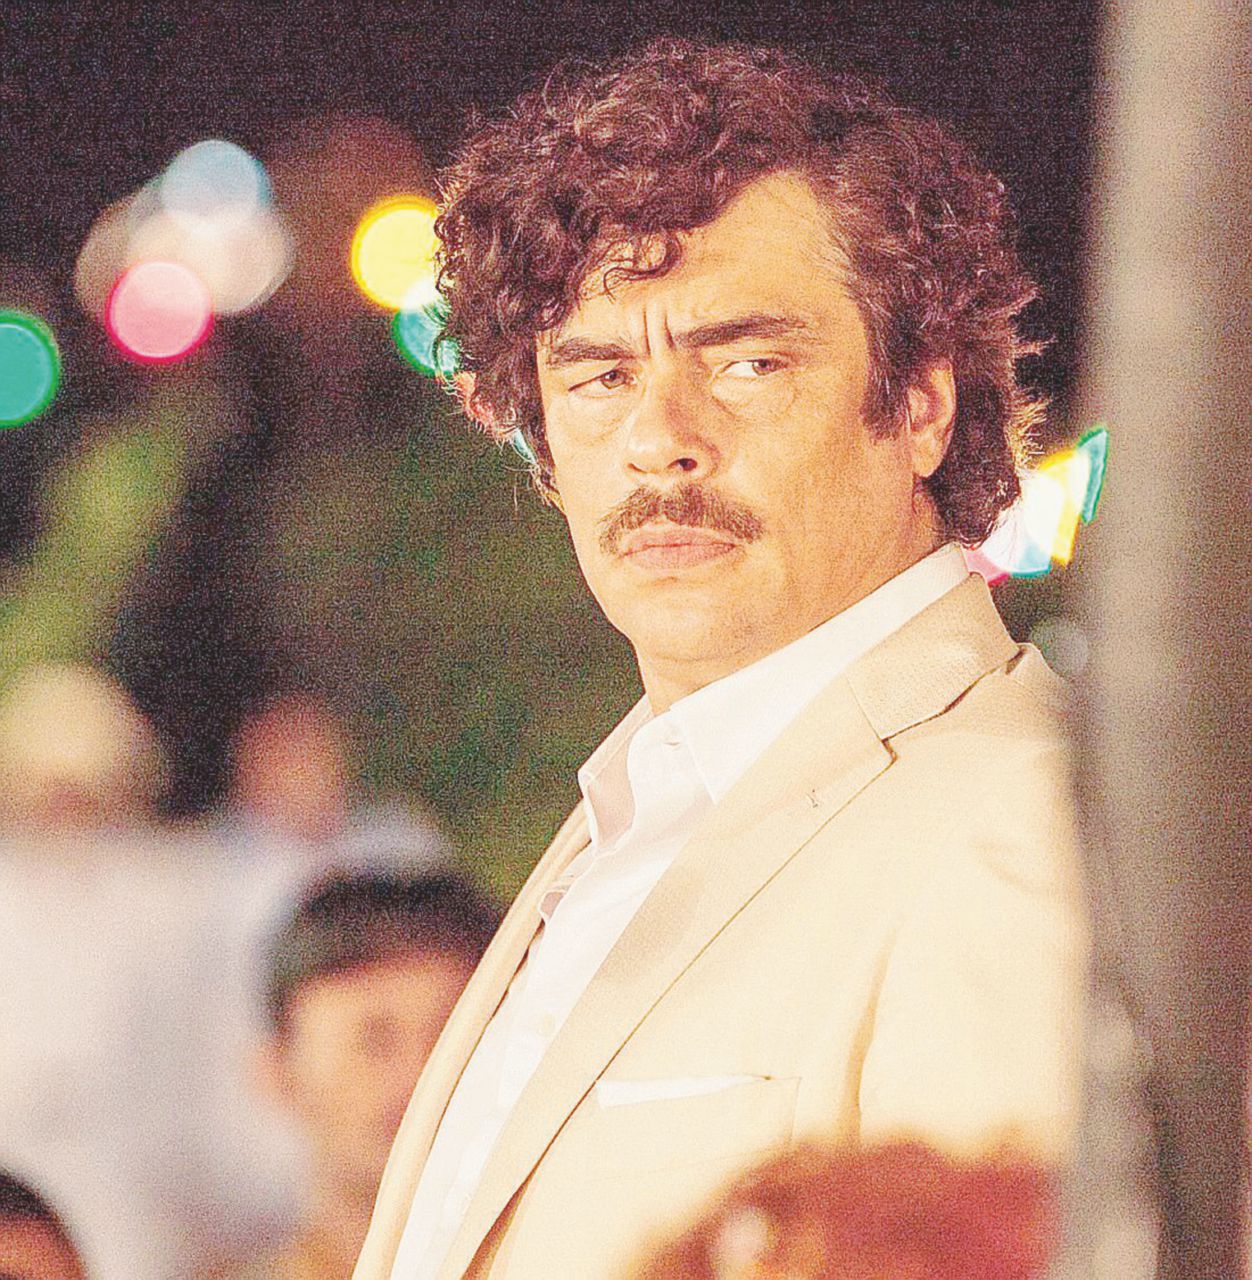 Copertina di “Escobar”, la fuga dei registi porta sempre buoni frutti